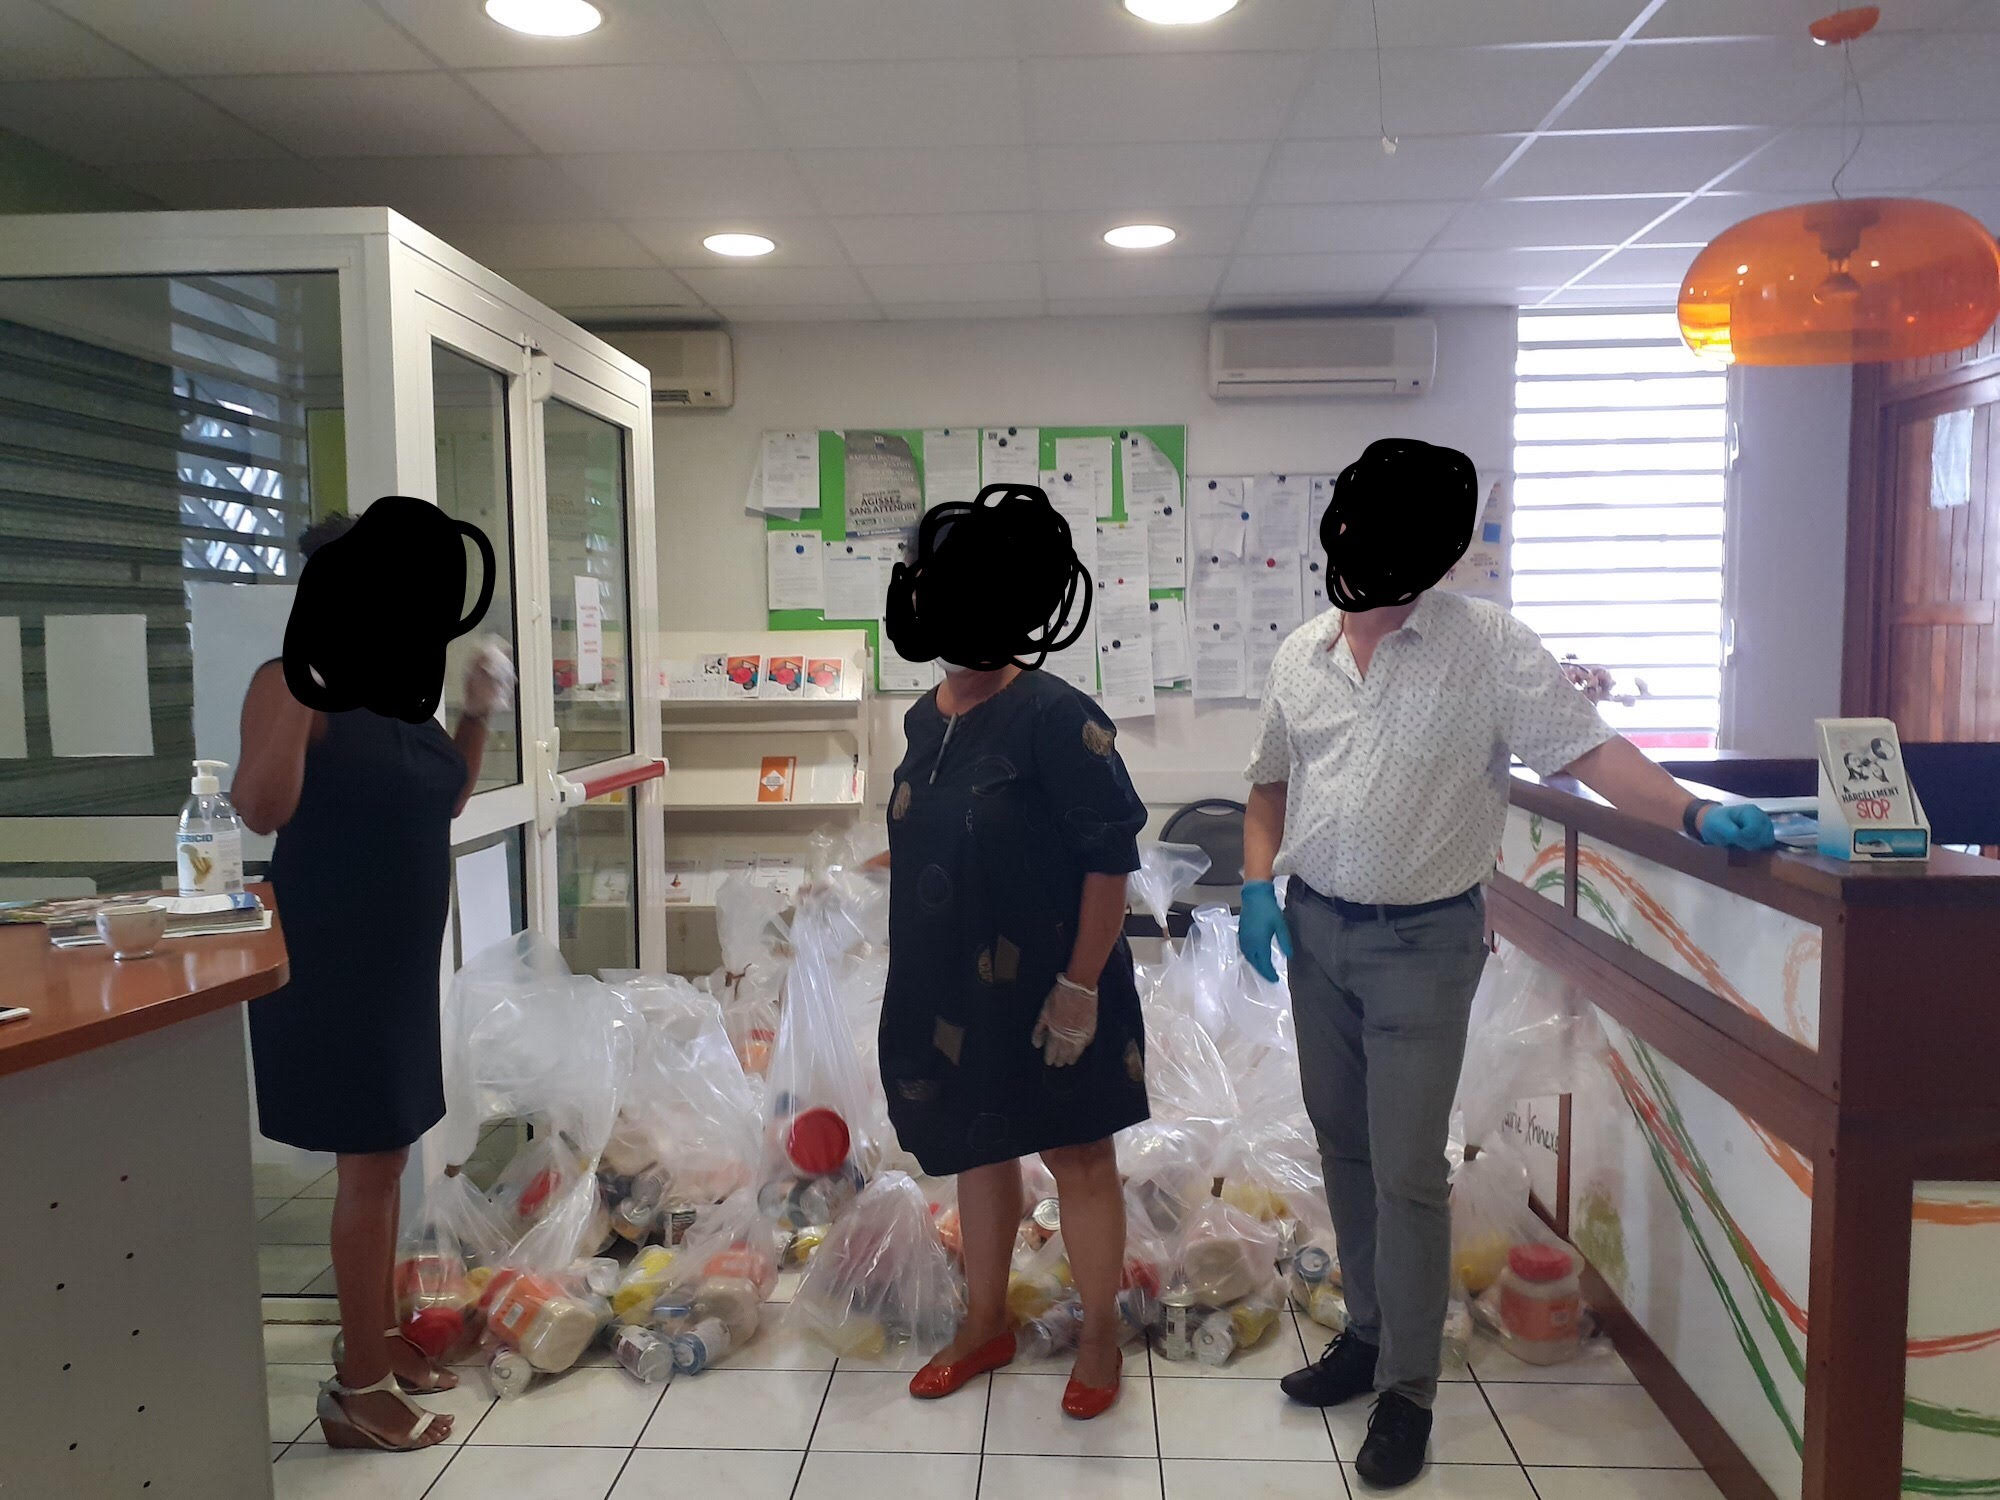 Des élus de St-Denis posant devant des colis alimentaires à l'intérieur des locaux du CCAS. Derrière eux, les colis très reconnaissables dans leurs sacs transparents et le scotch marron (Photo Facebook mairie de St-Denis)